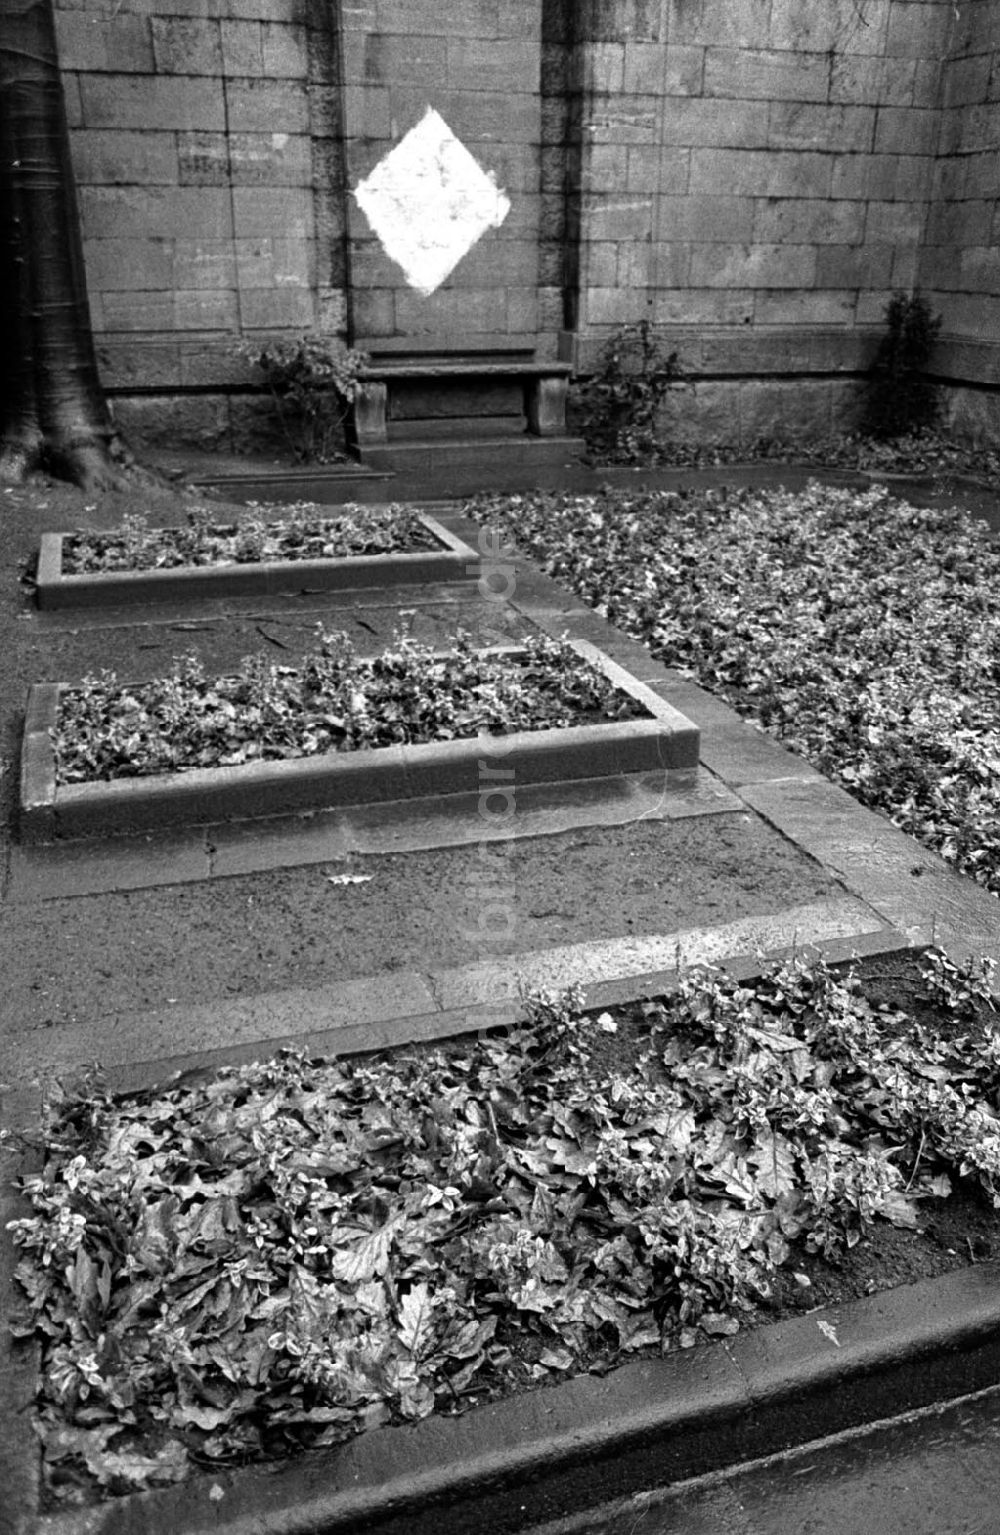 DDR-Bildarchiv: Berlin - Grab von Walter Rathenau geschändet 14.12.92 Foto: ND/Lange Umschlagnummer: 1235